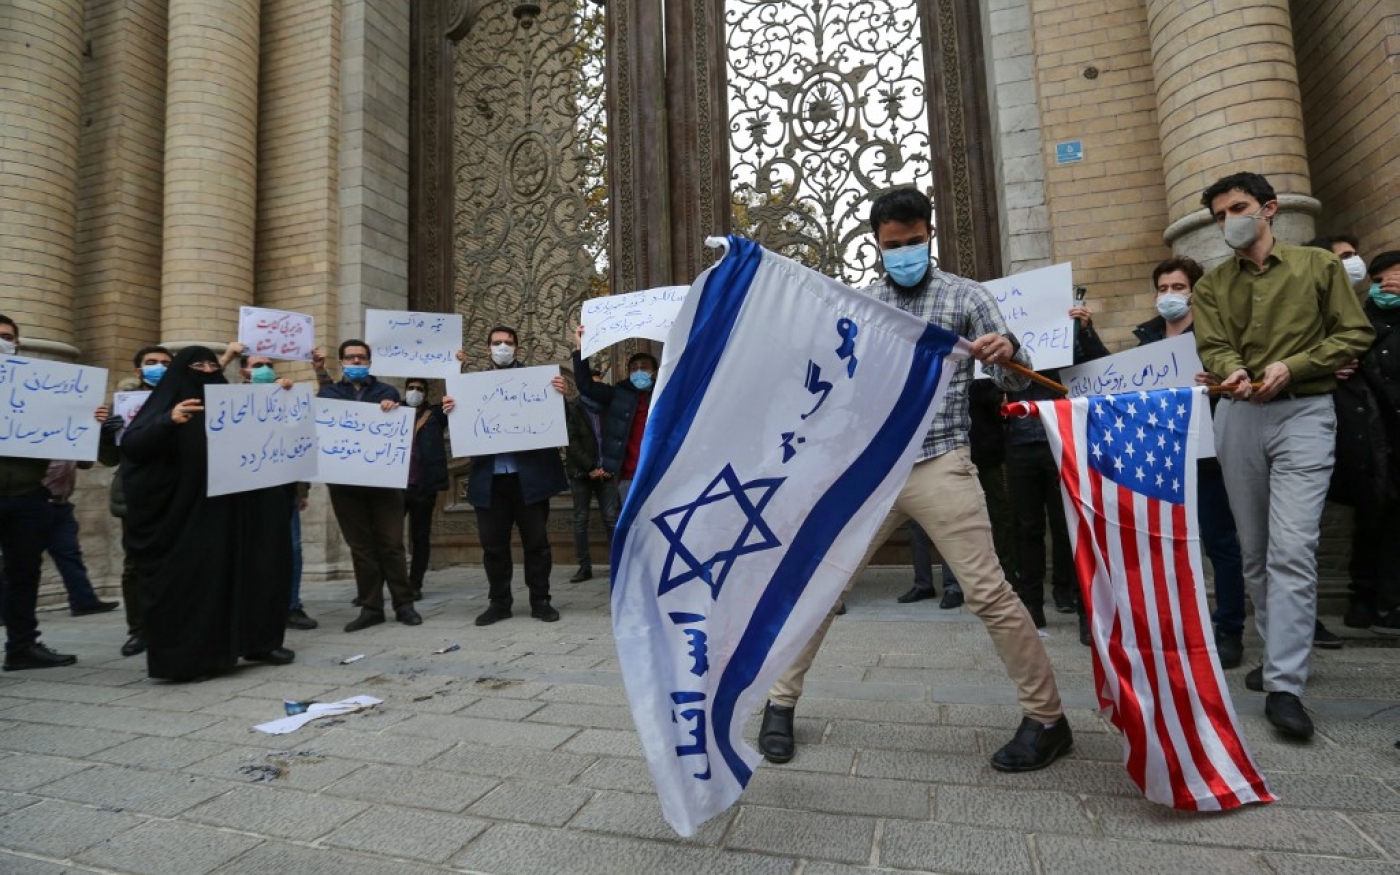 Des étudiants du groupe paramilitaire Basij s’apprêtent à brûler les drapeaux américain et israélien lors d’un rassemblement à Téhéran, le 28 novembre 2020 (AFP)